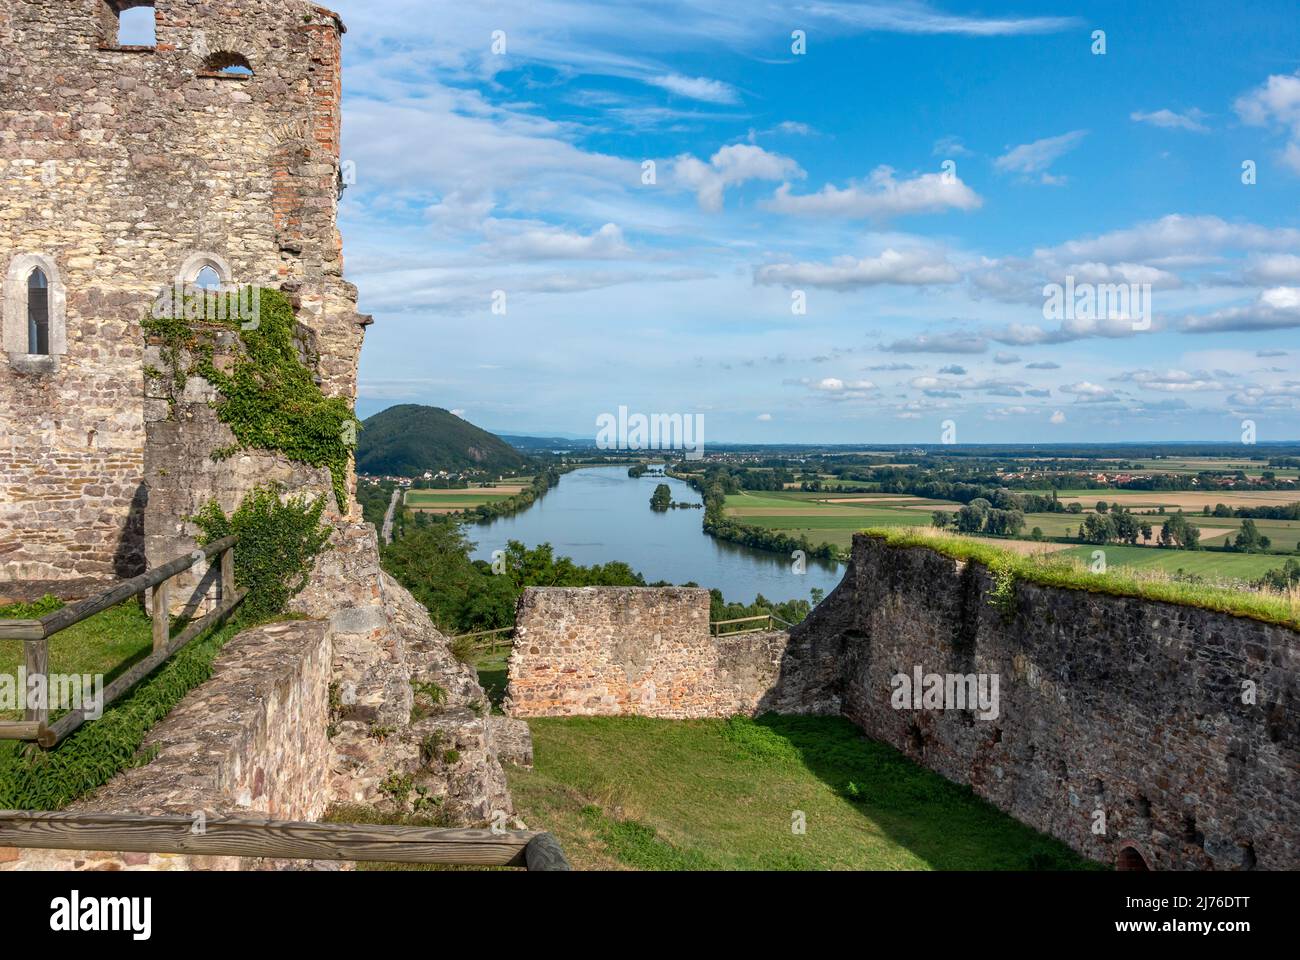 Germania, Donaustauf, vista dalla rovina del castello Donaustauf nella valle del Danubio. La rovina del castello Donaustauf è la rovina di un alto castello sopra il paese Donaustauf nel Palatinato superiore distretto Regensburg. Foto Stock